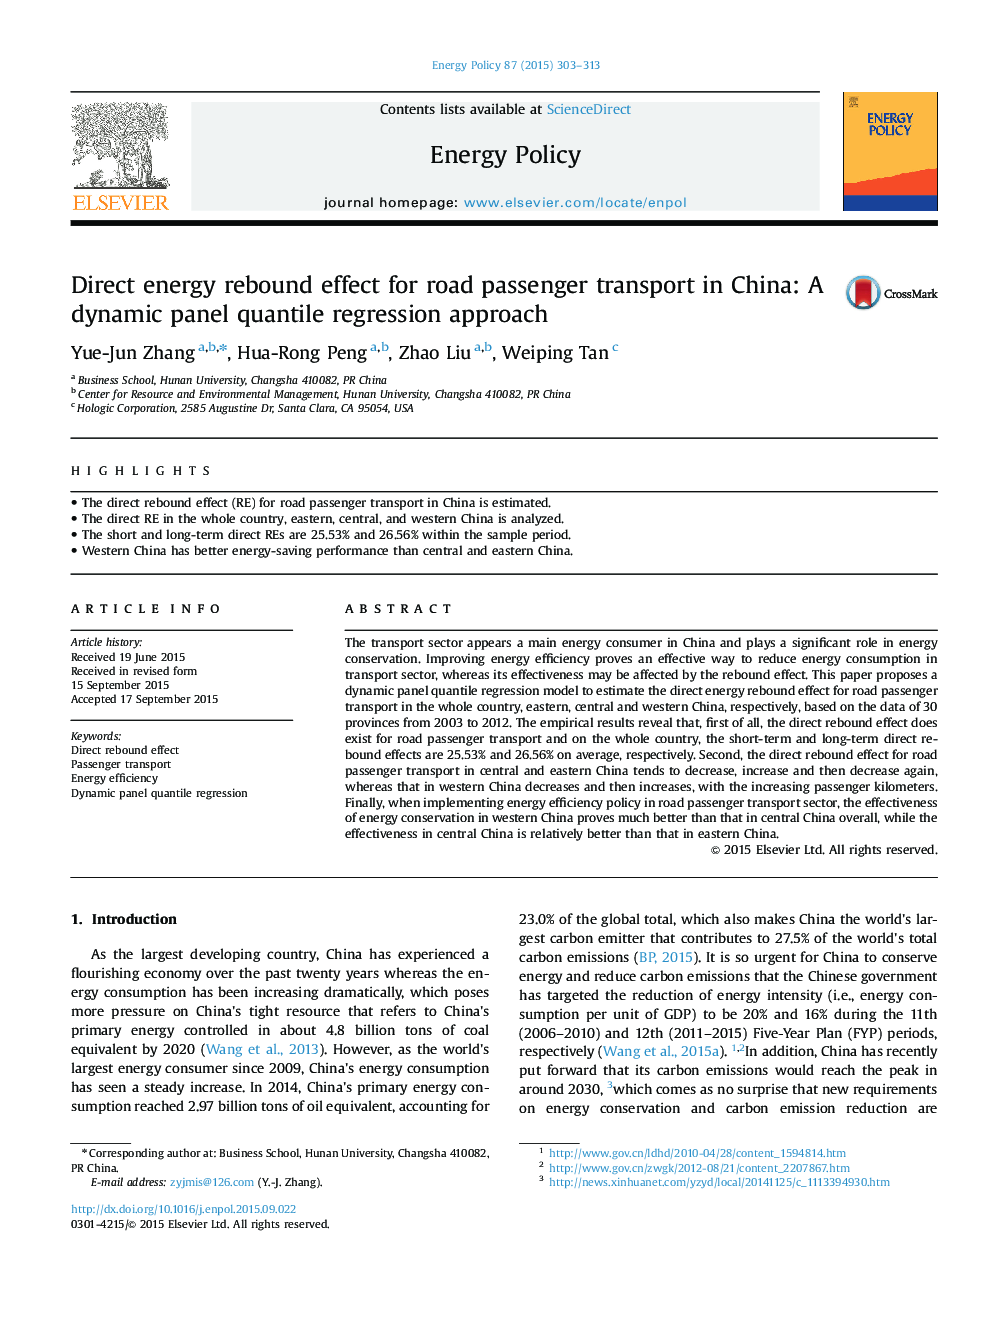 اثر مستقیم انرژی برای حمل و نقل مسافر جاده در چین: رویکرد رگرسیون کیفی پانل 